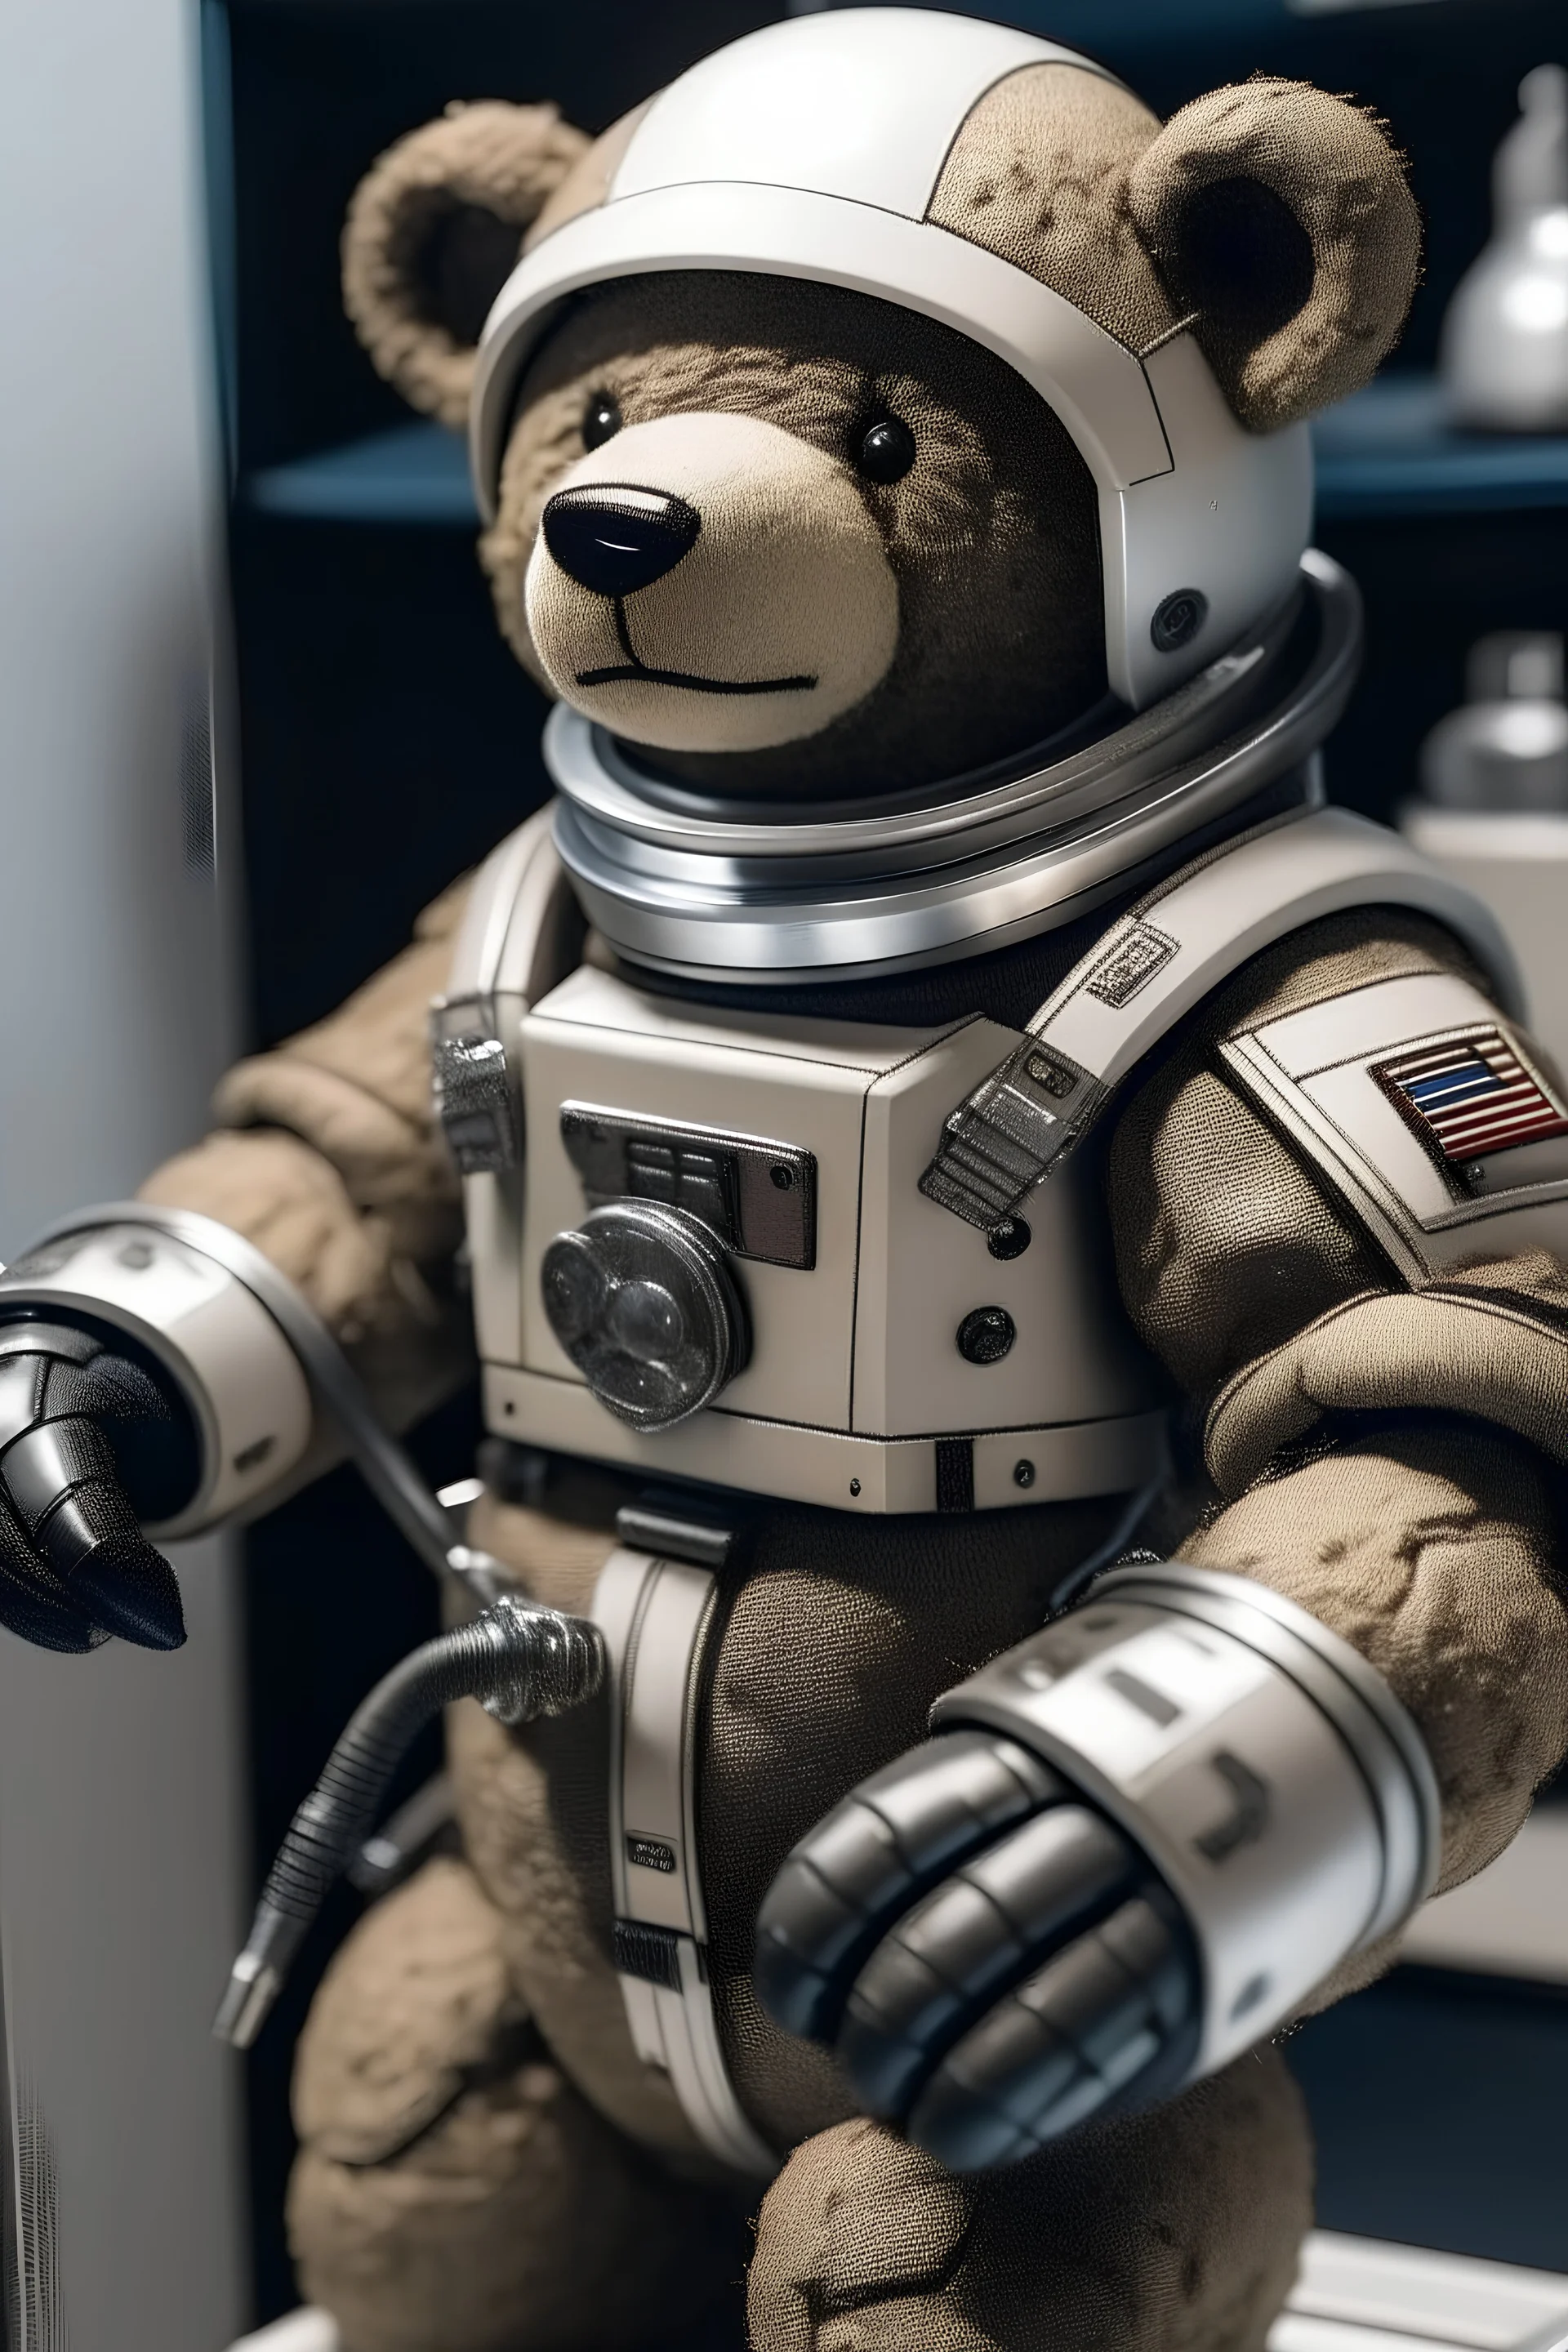 teddy bear space suit living space gun